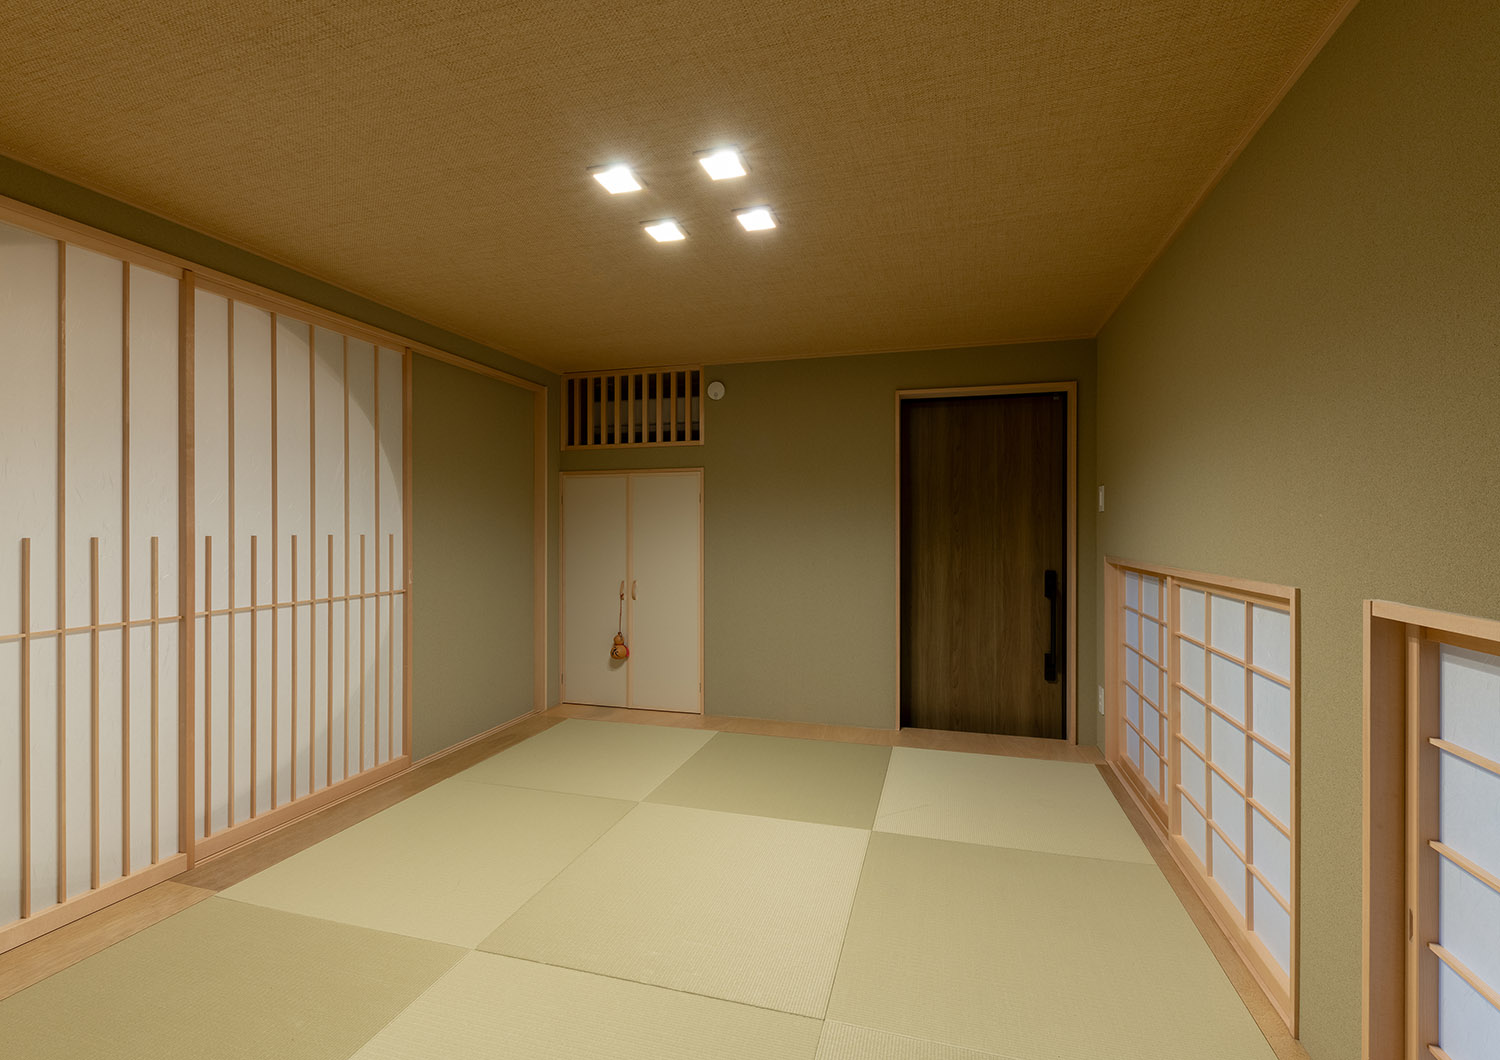 木の扉を取り付けた琉球畳のモダンな和室・デザイン住宅